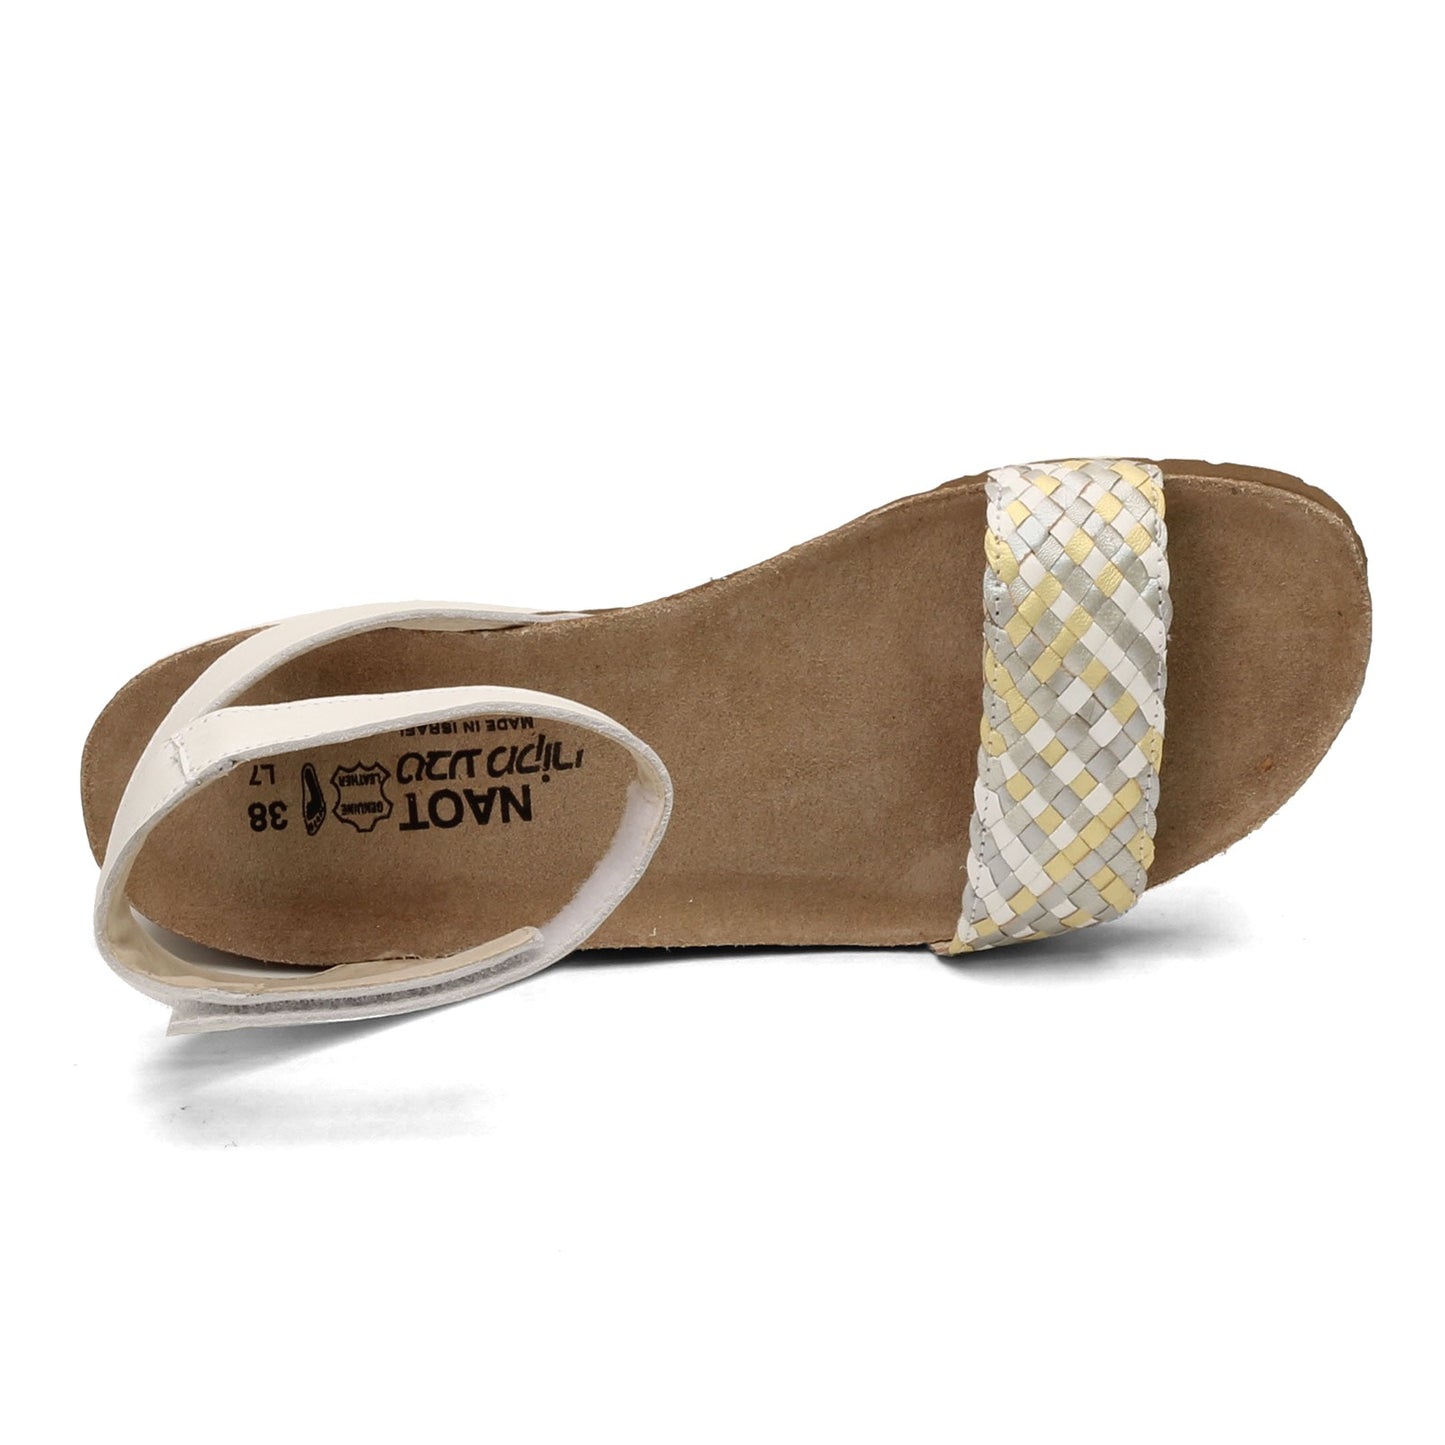 Peltz Shoes  Women's Naot Abbie Sandal WHITE METALLIC 4031-YE3